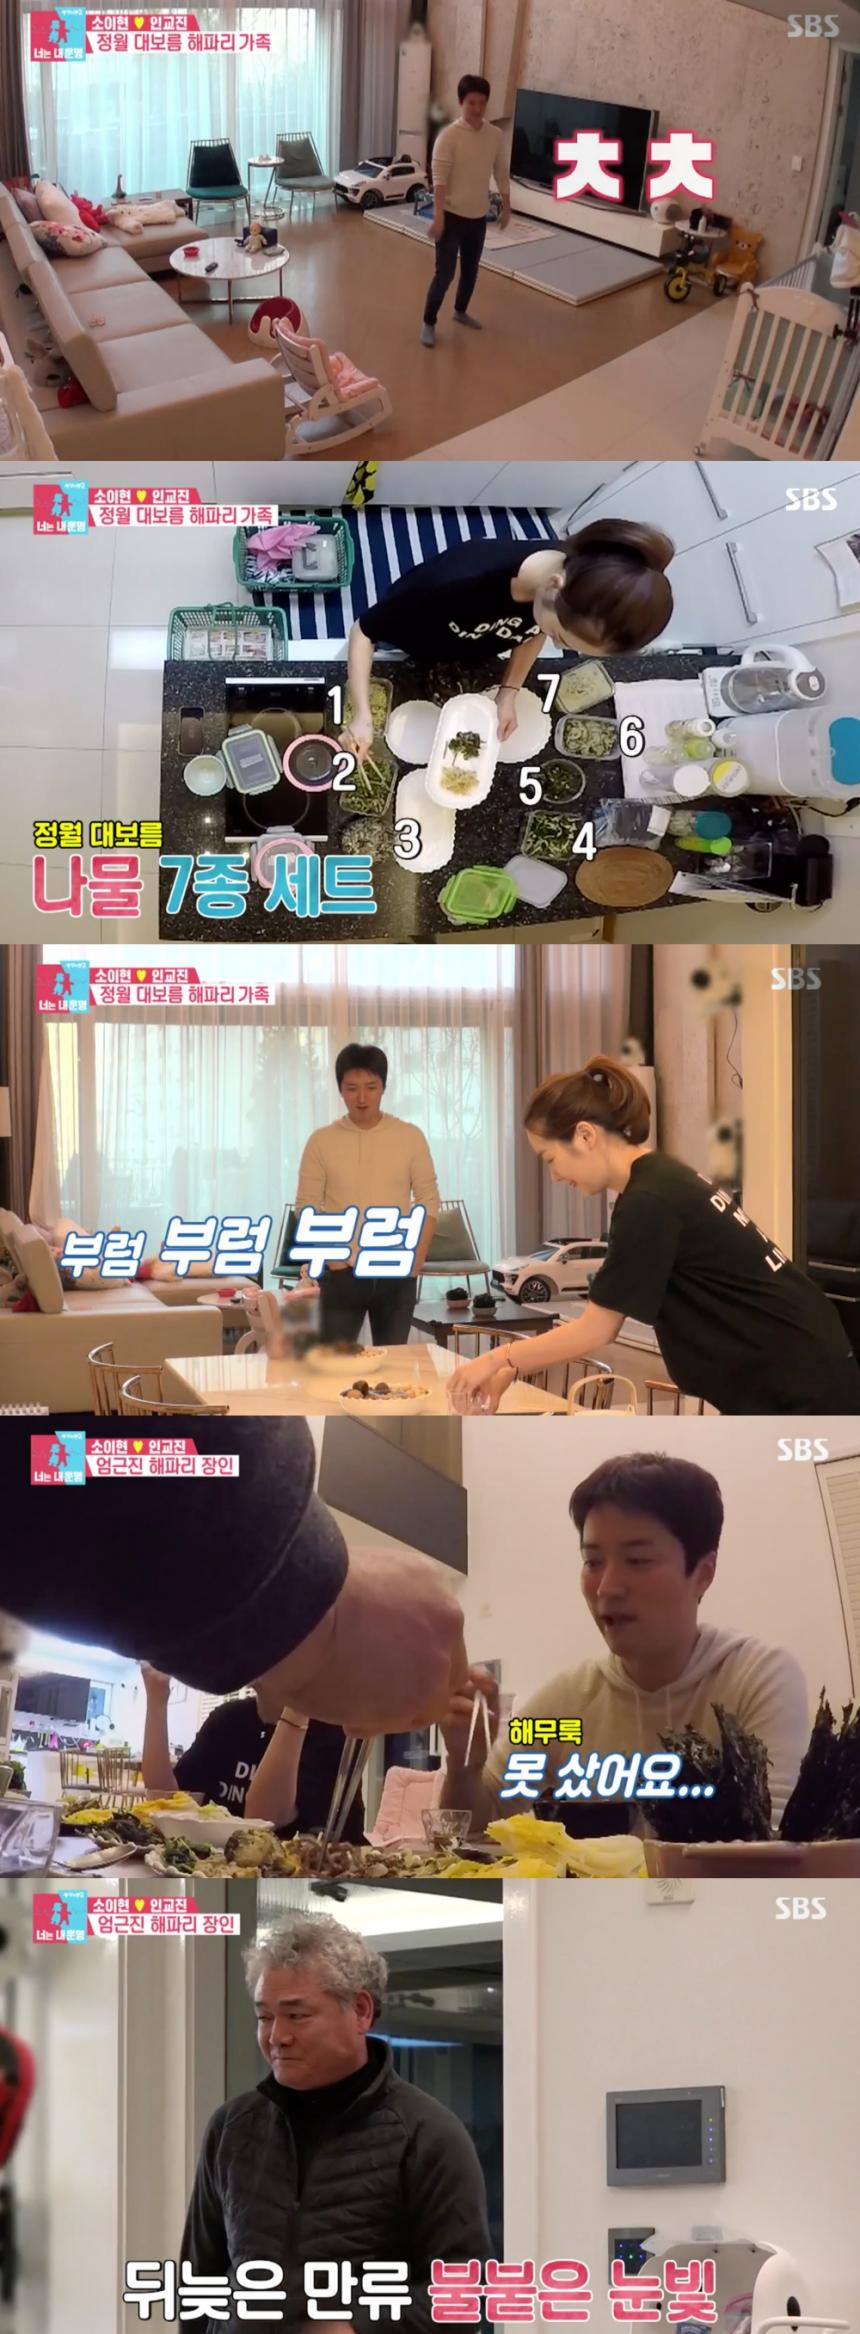 SBS ‘동상이몽 시즌2’ 방송캡쳐